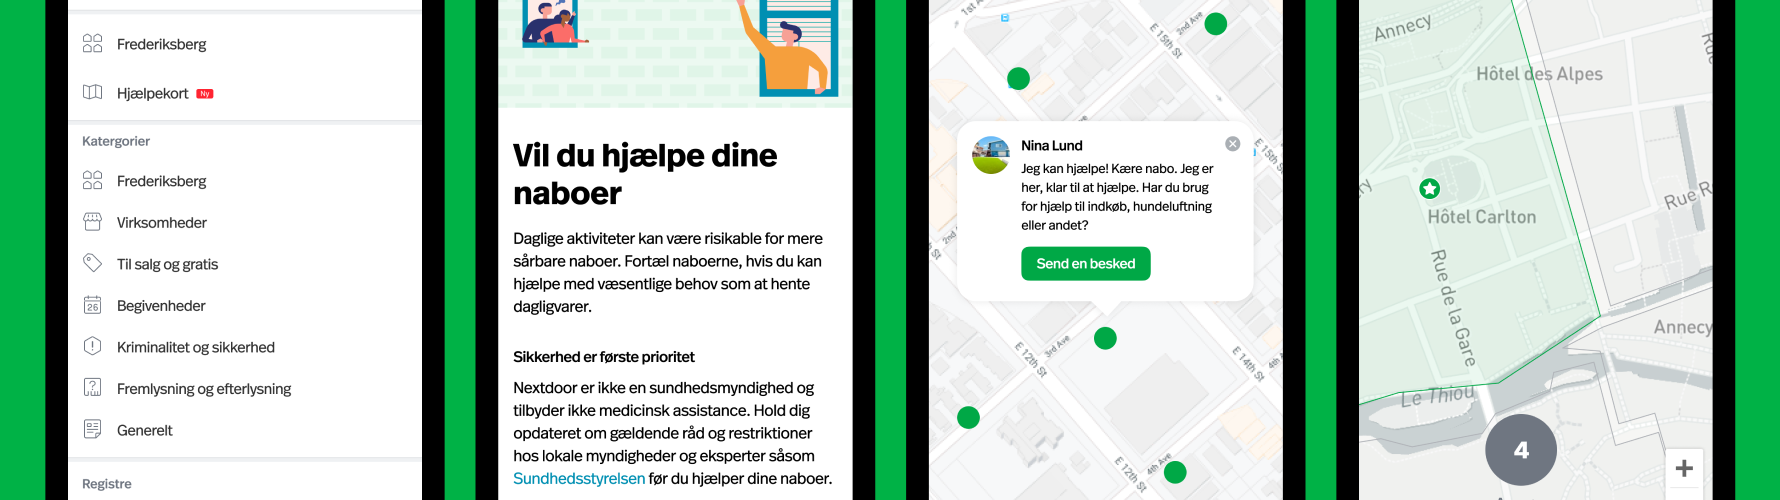 Nextdoor hjælpekort Danmark